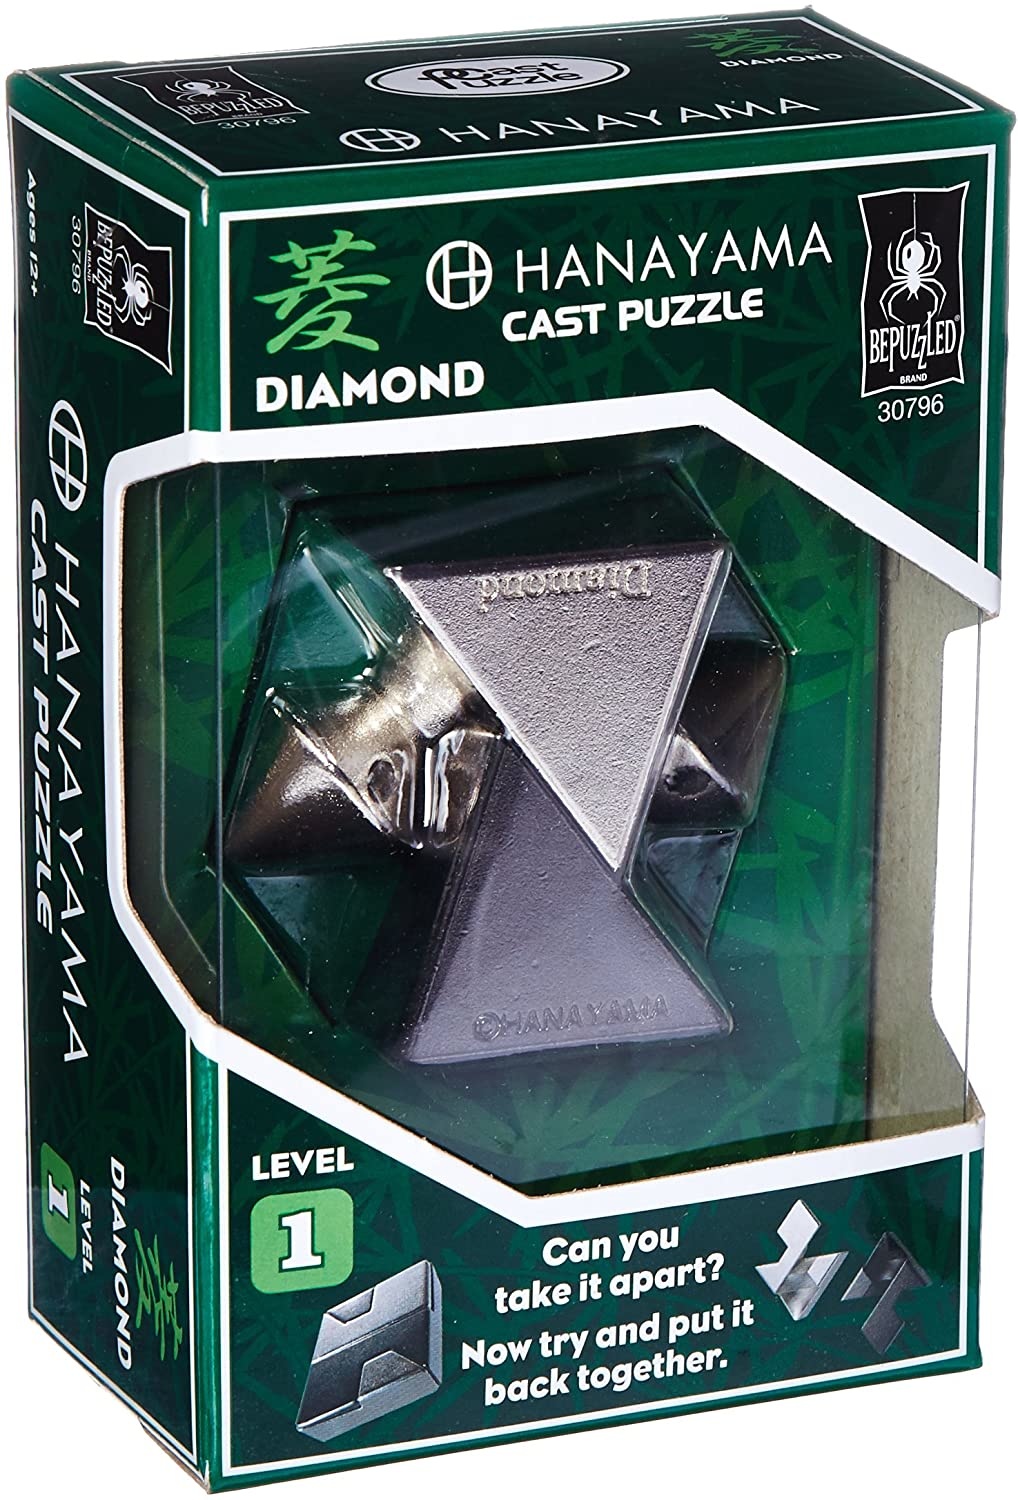 HANAYAMA Huzzle cast Level 5 Level6 6 types set Puzzle disassemble block  puzzle